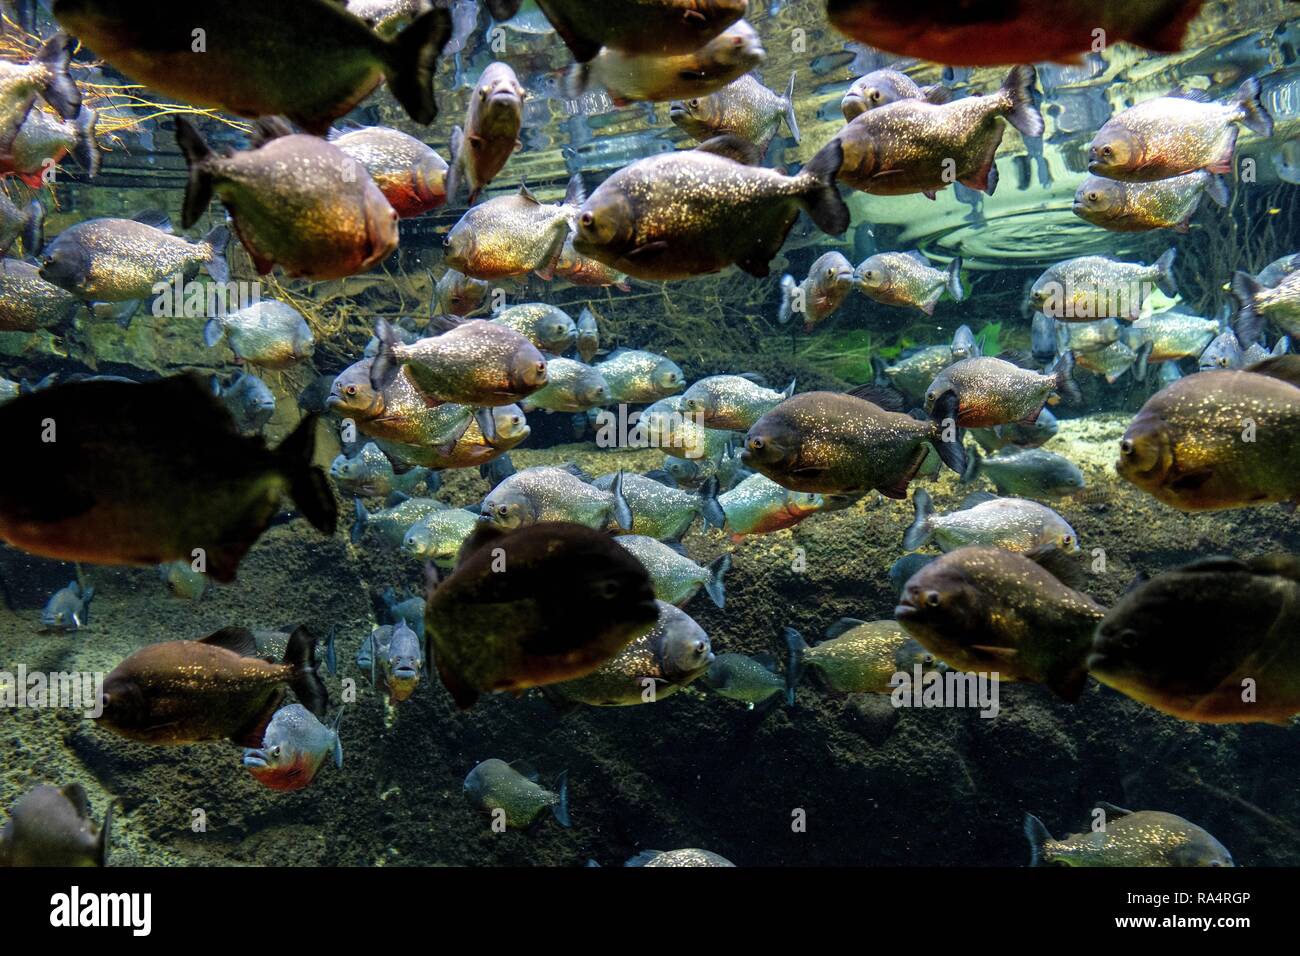 Akwarium tropikalne rejonu amazonki - roznorodne gatunki ryb w tym piranie  Tropical aquarium with mosaic of many species of colorful fish from  Amazonian region - mostly piranhas - in a zoological fac